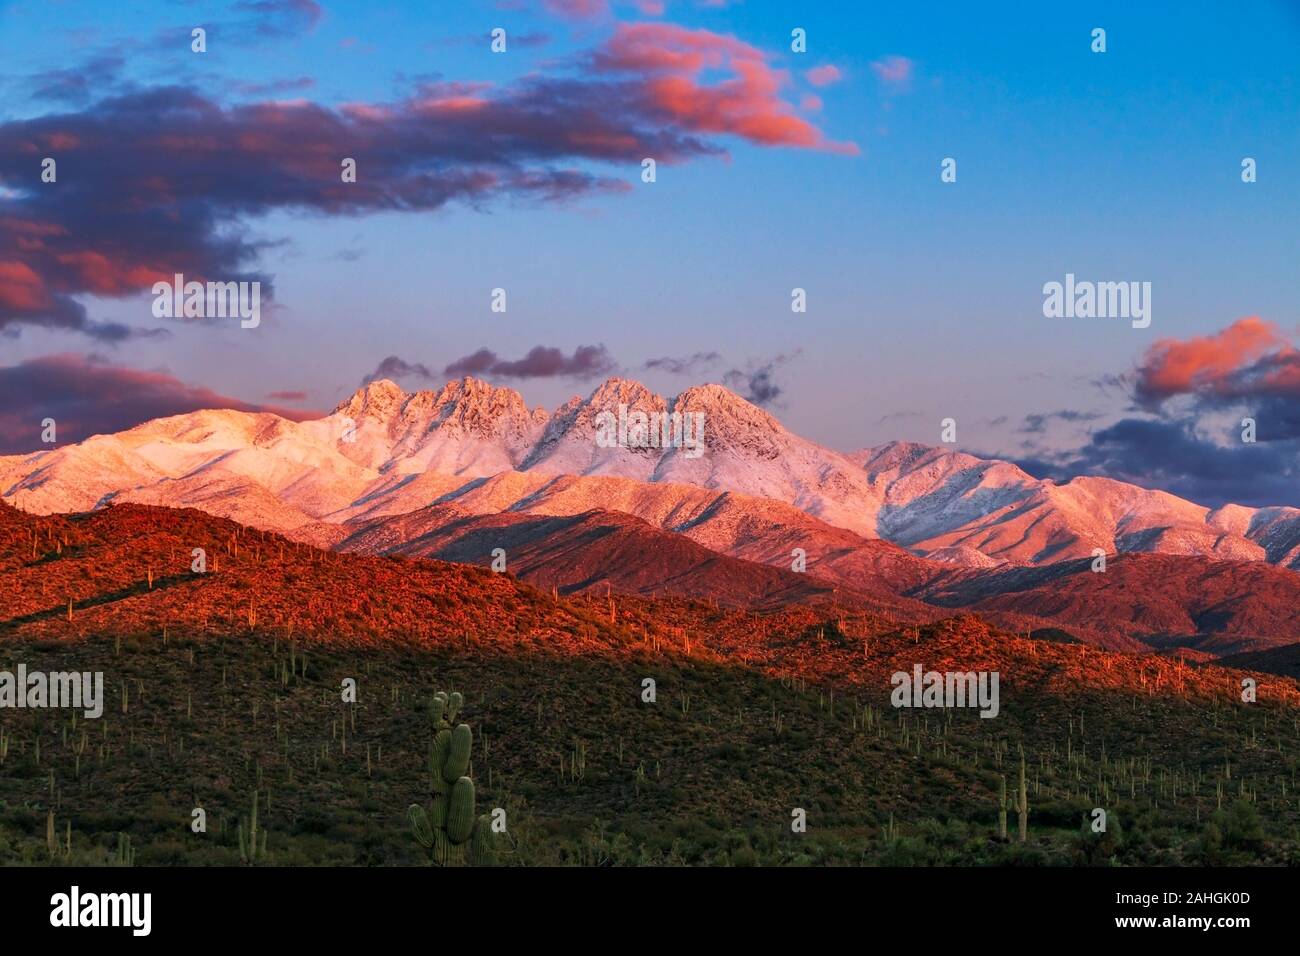 Tramonto immagine della neve covred quattro picchi di montagna fuori gamma Phoenix AZ dopo la tempesta Foto Stock